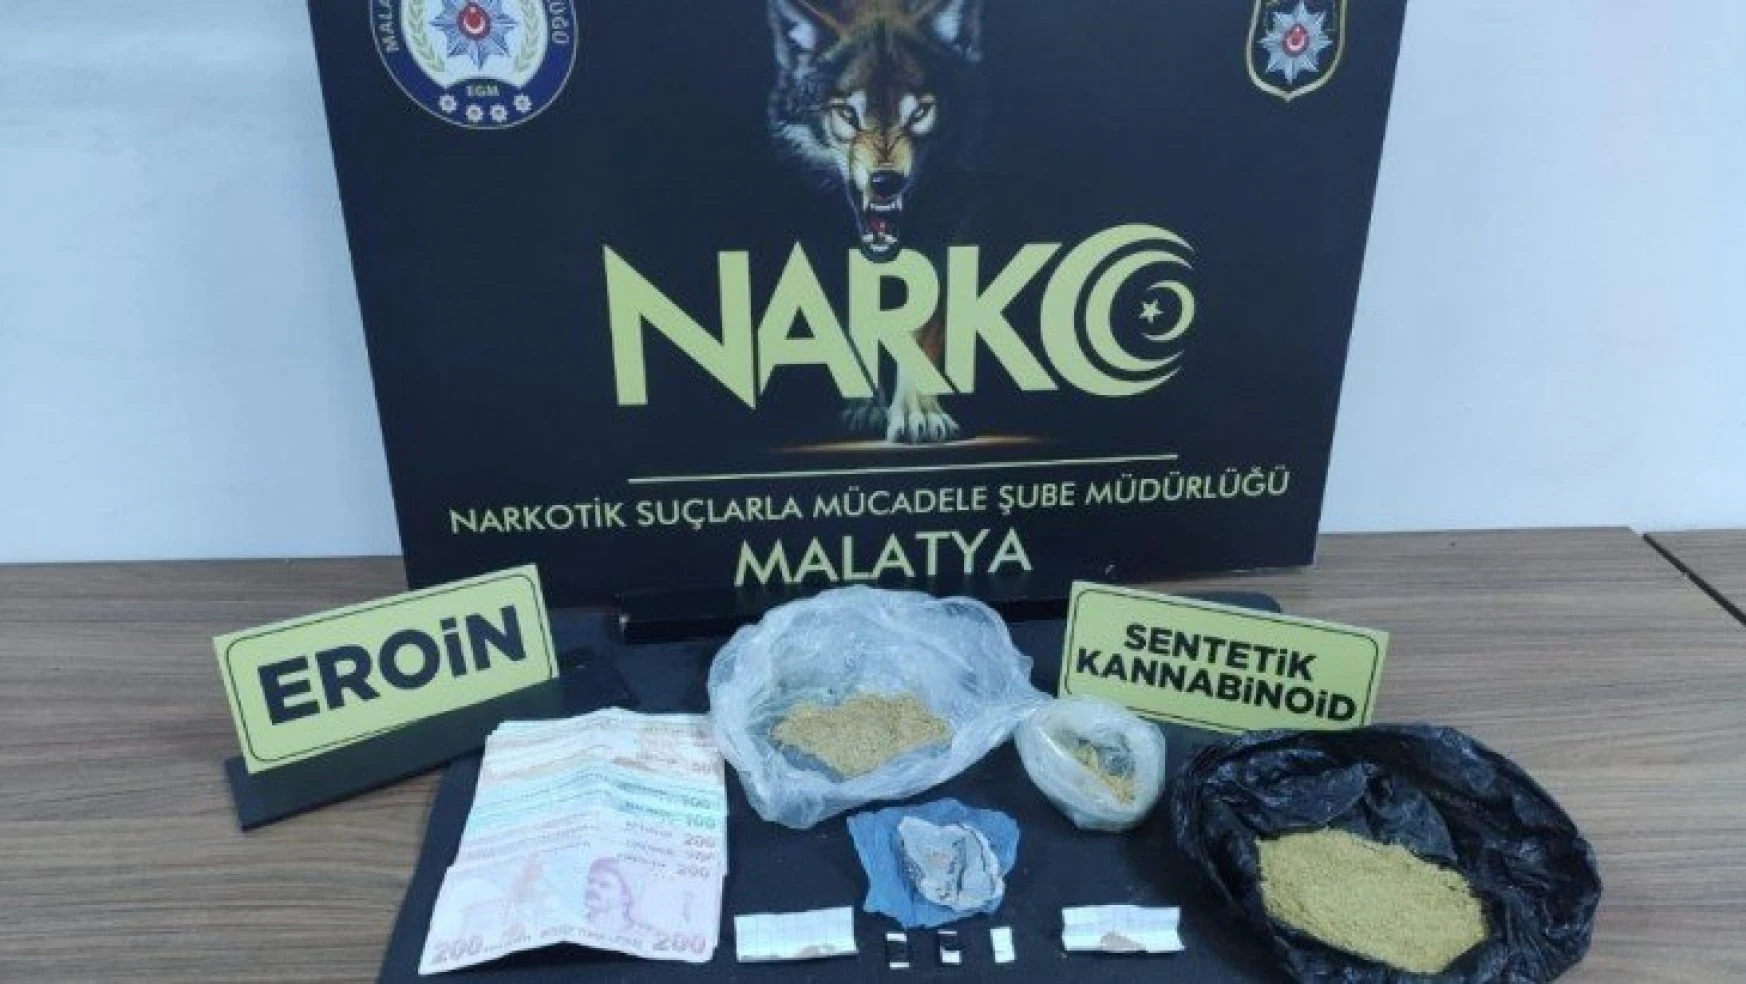 Malatya'da uyuşturucu satıcılarına büyük darbe: 6 kişi tutuklandı